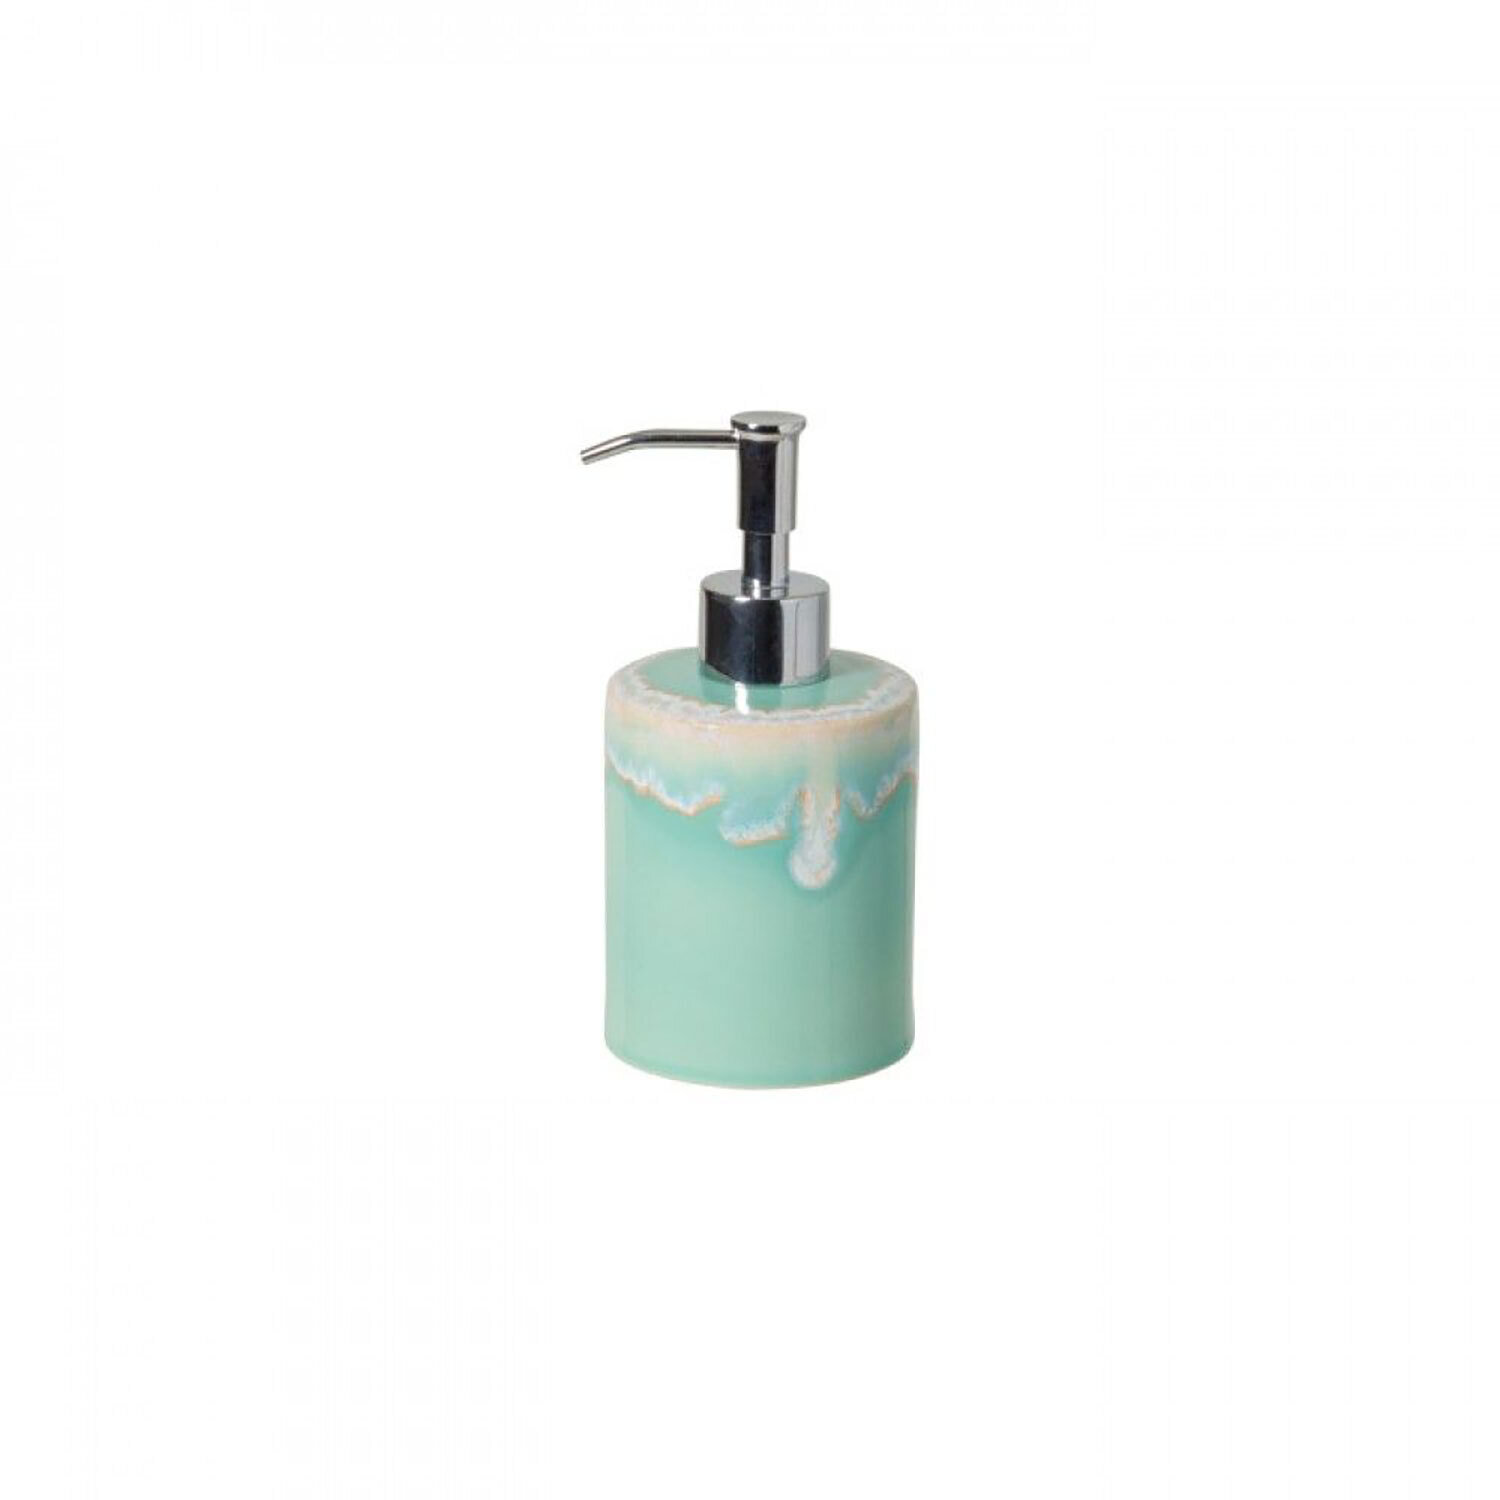 Casafina Taormina Bath Aqua Lotion Pump TA682-AQU